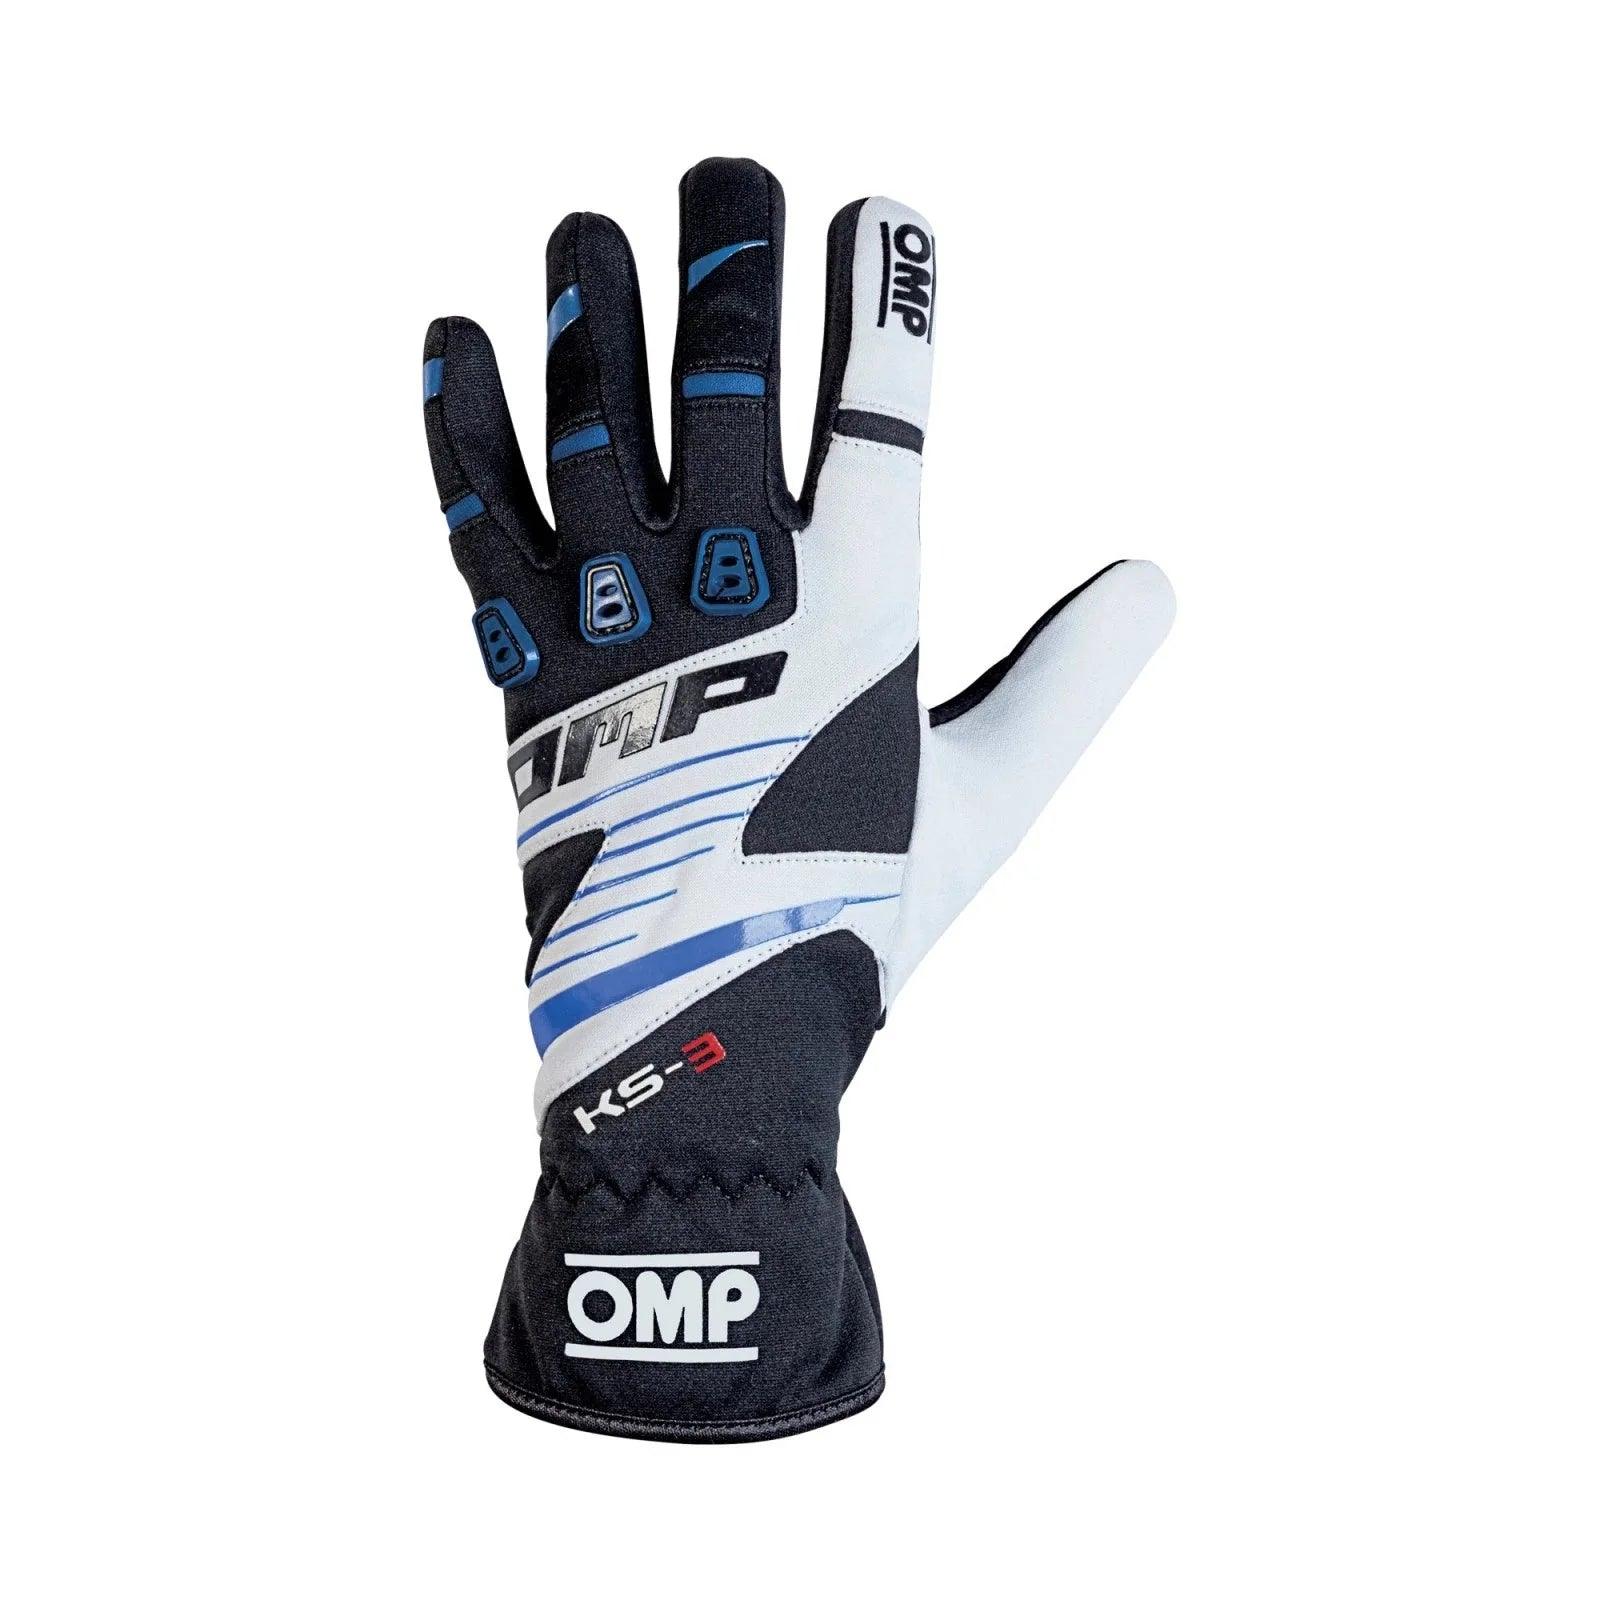 OMP KS-3 Kart Gloves - Adult Sizes - Dash Racegear 